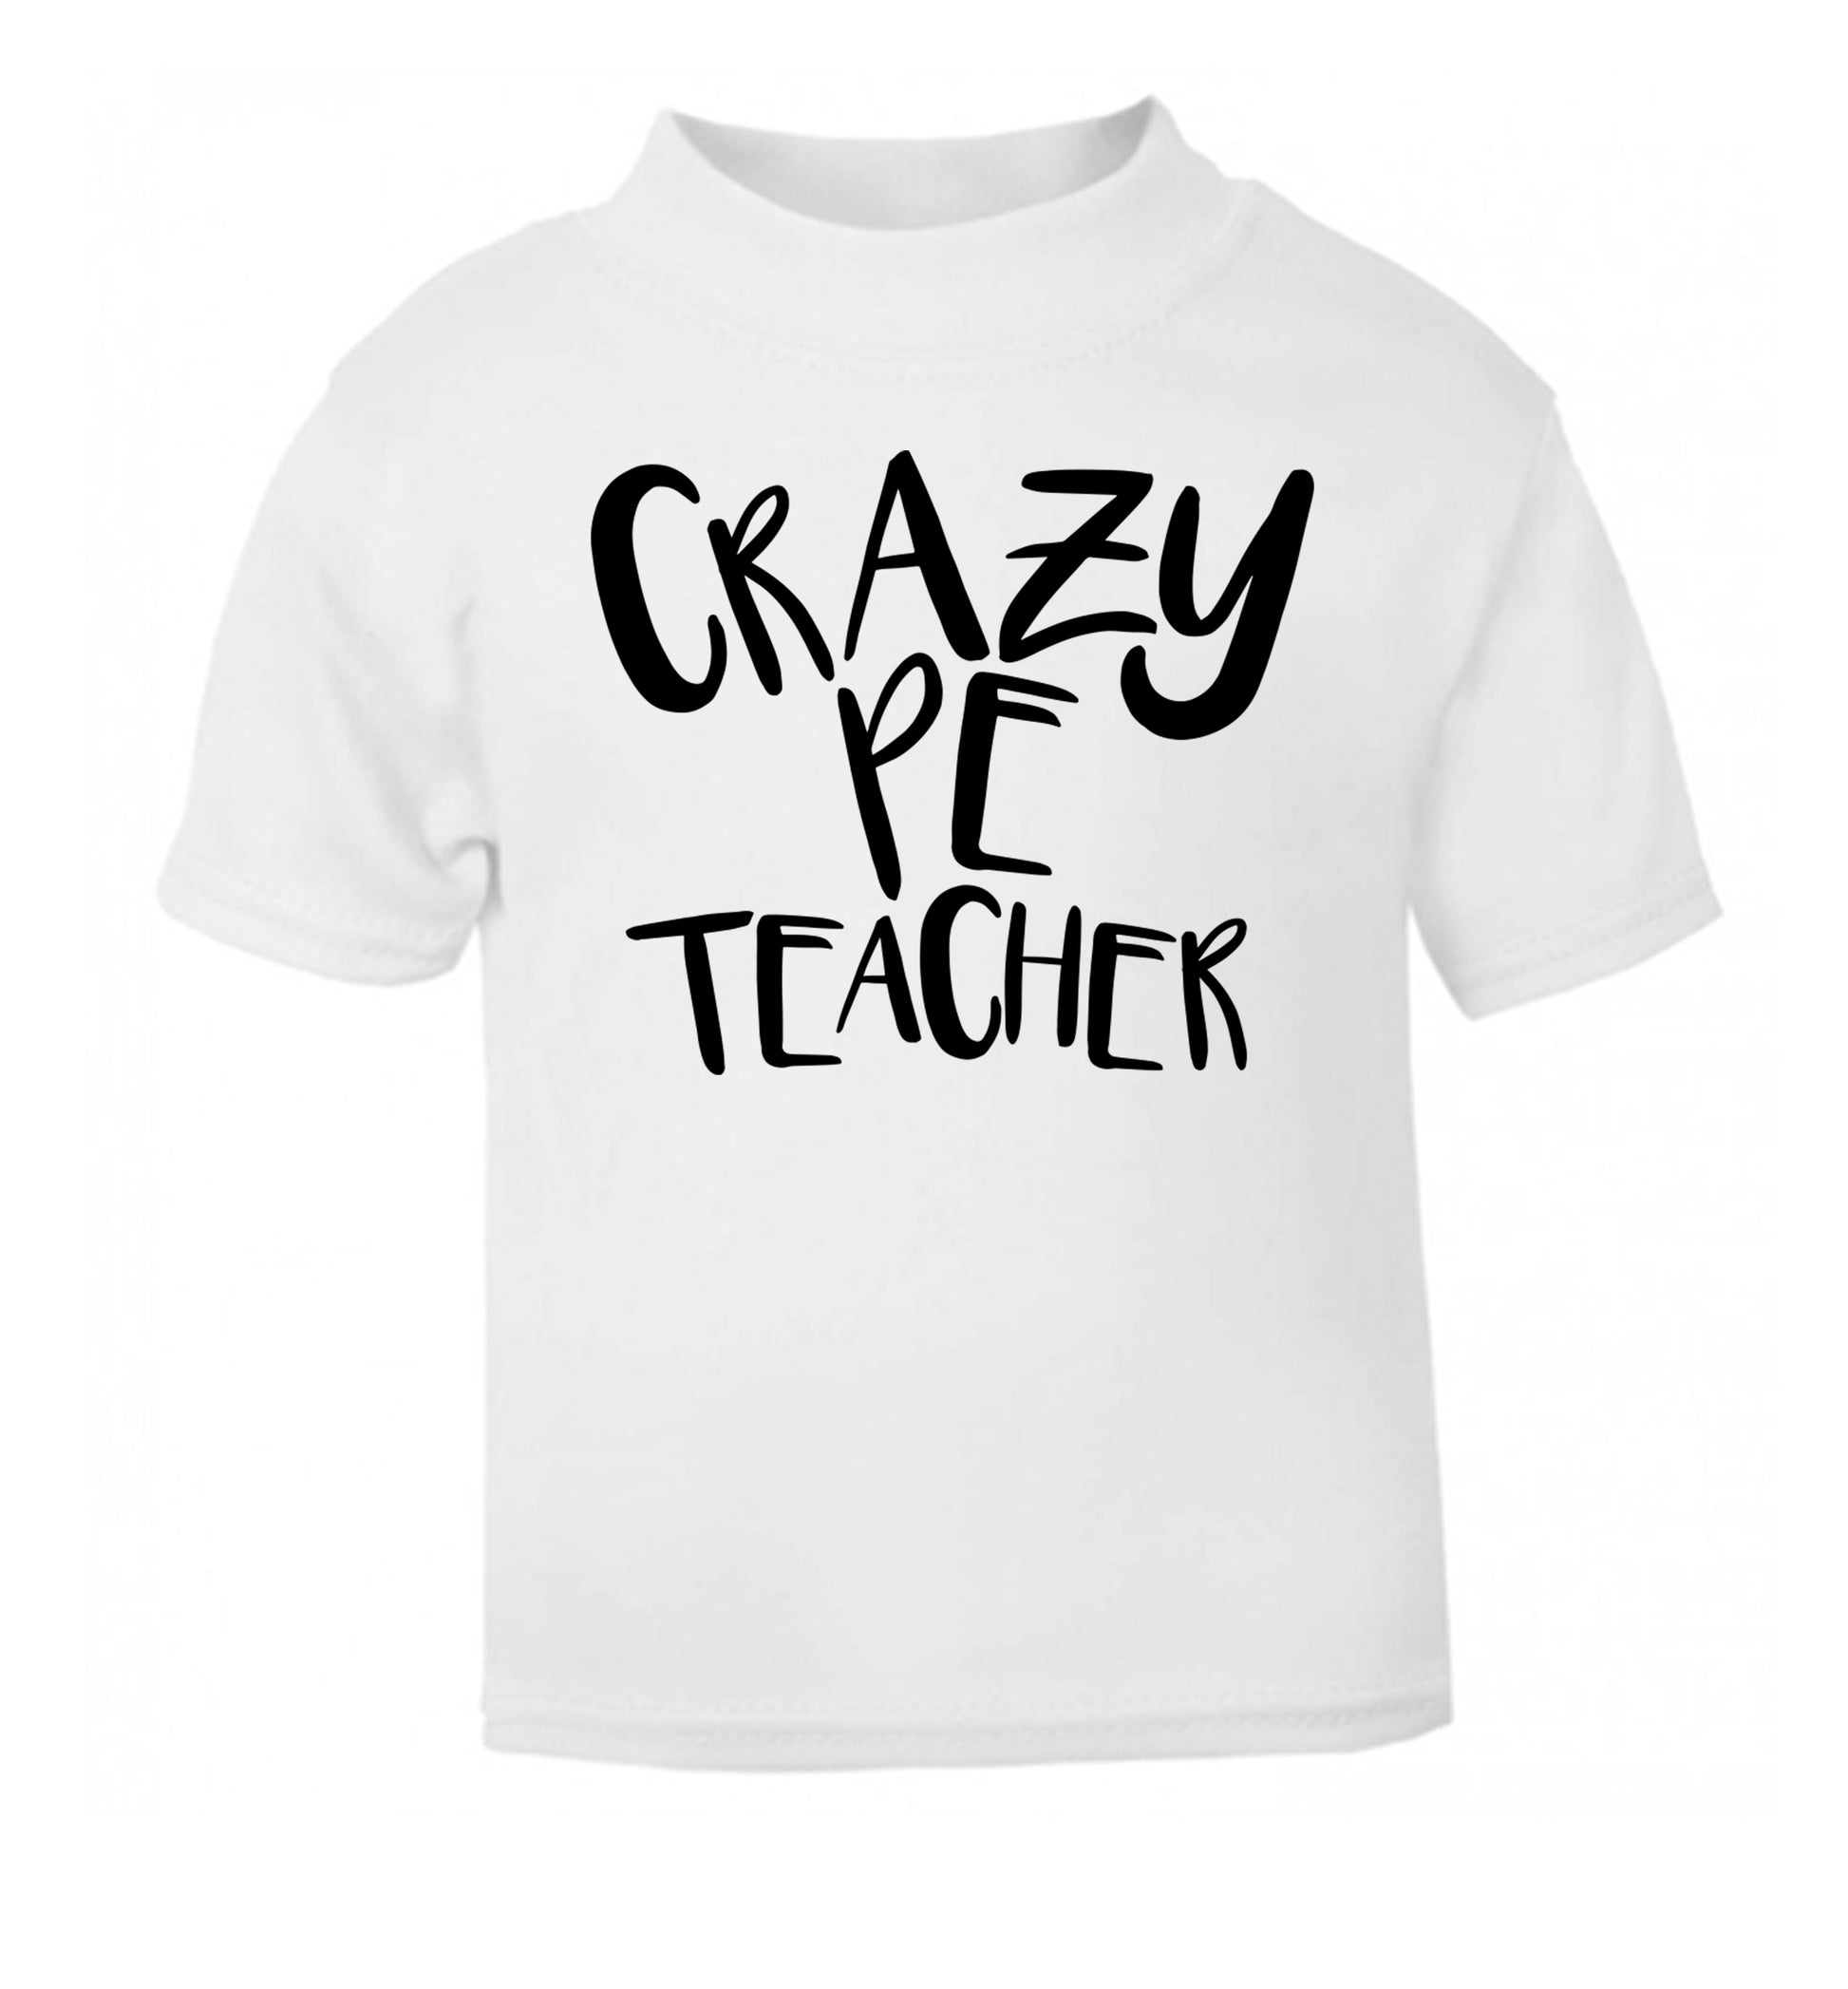 Crazy PE teacher white Baby Toddler Tshirt 2 Years